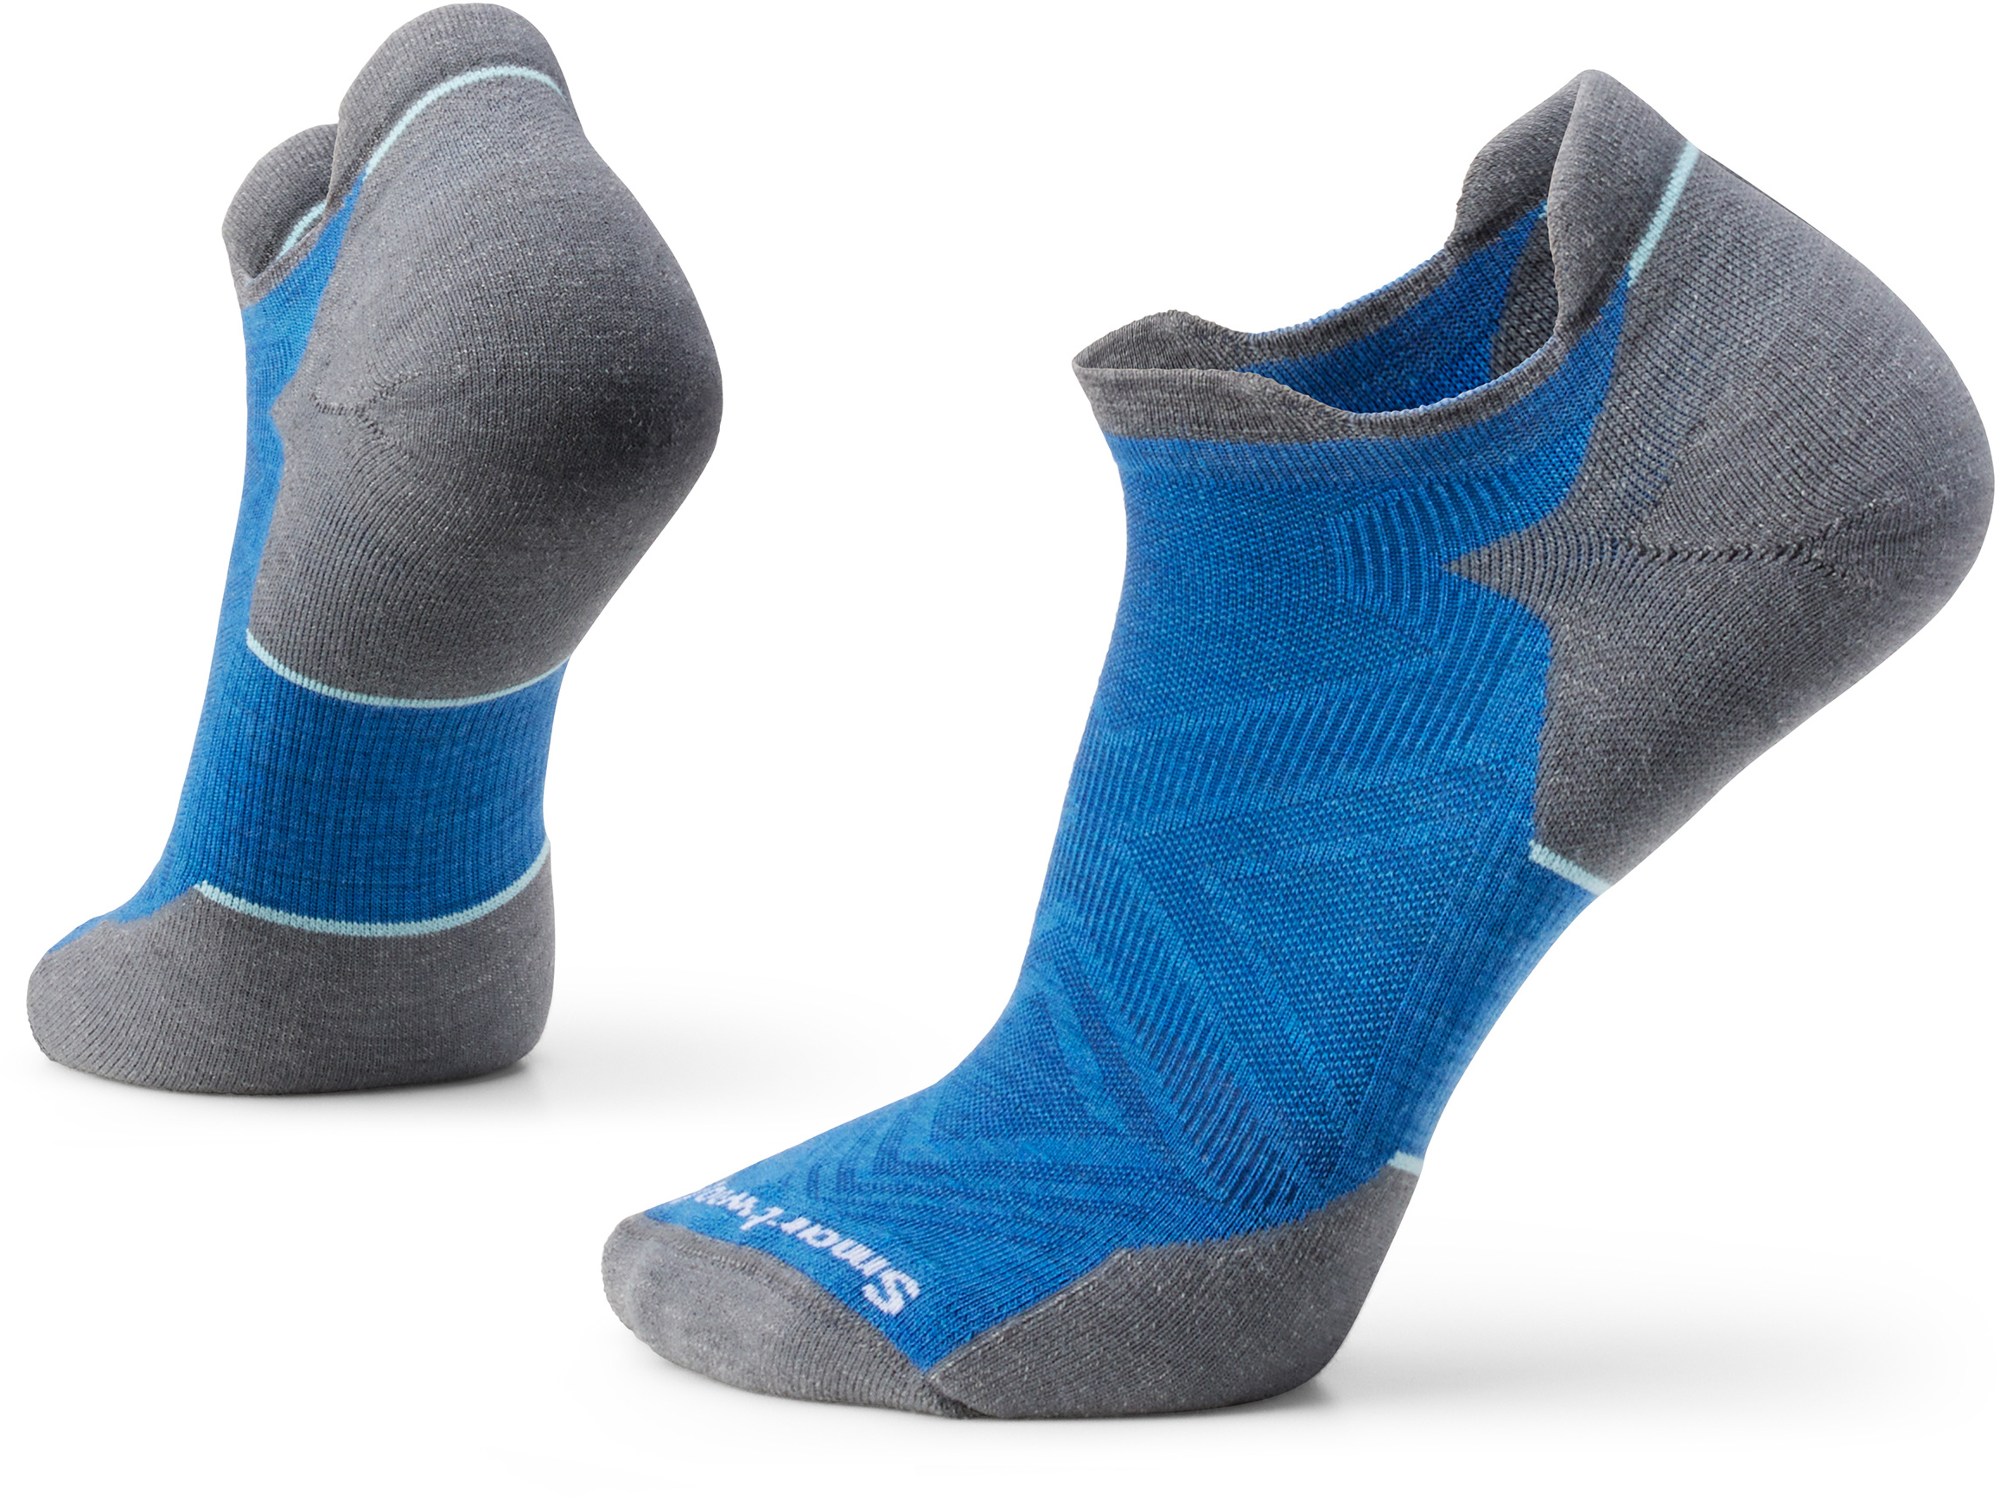 Носки до щиколотки Performance Run Targeted Cushion — мужские Smartwool, синий носки для бега smartwool performance run zero cushion low ankle цвет light gray